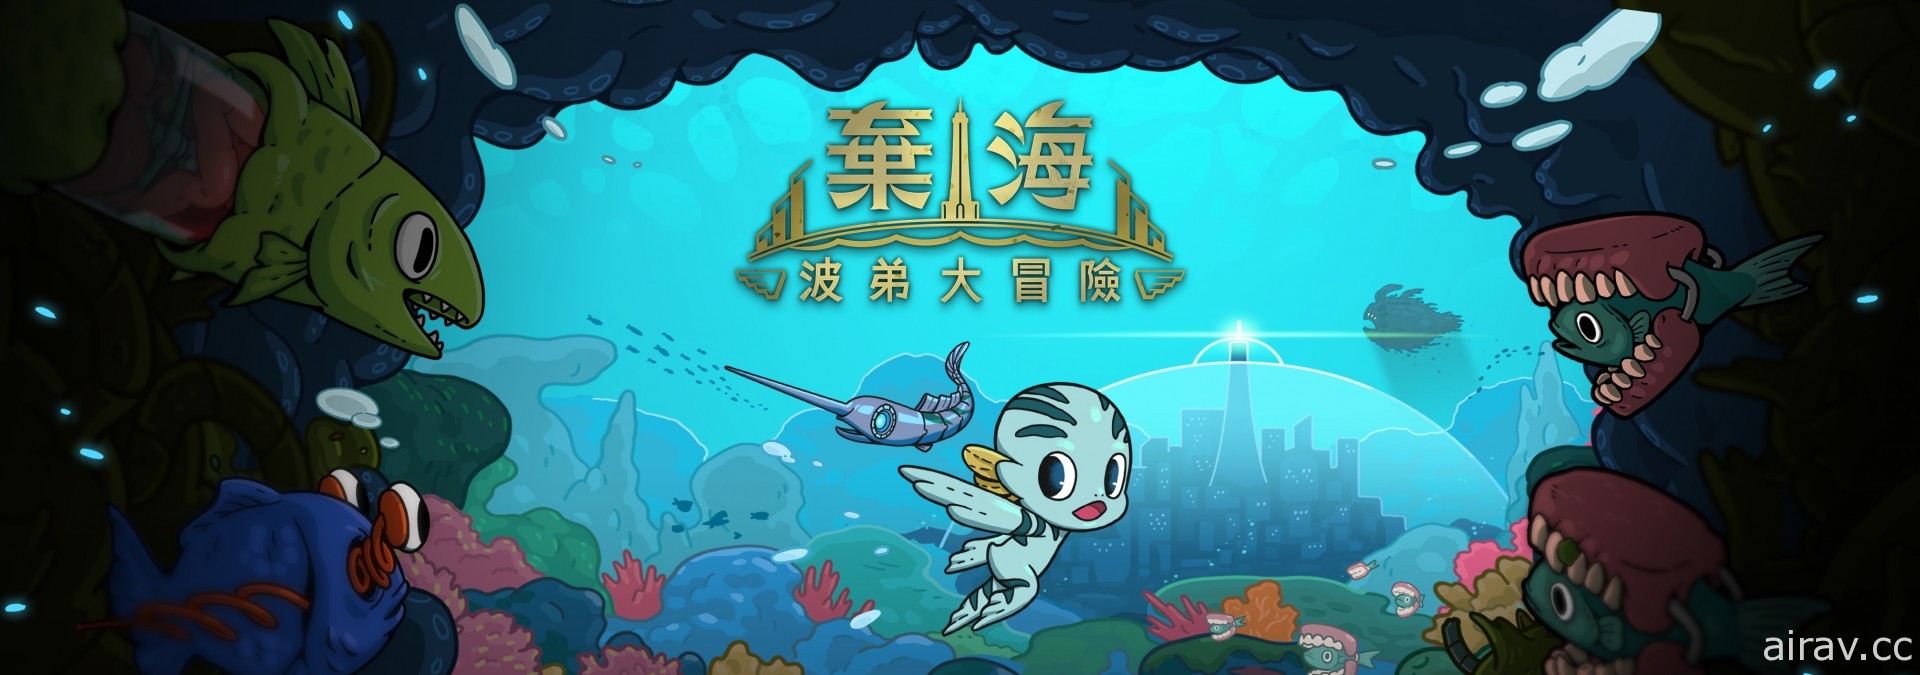 《螢幕判官》團隊新作《棄海：波弟大冒險》試玩版 2 月限時開放